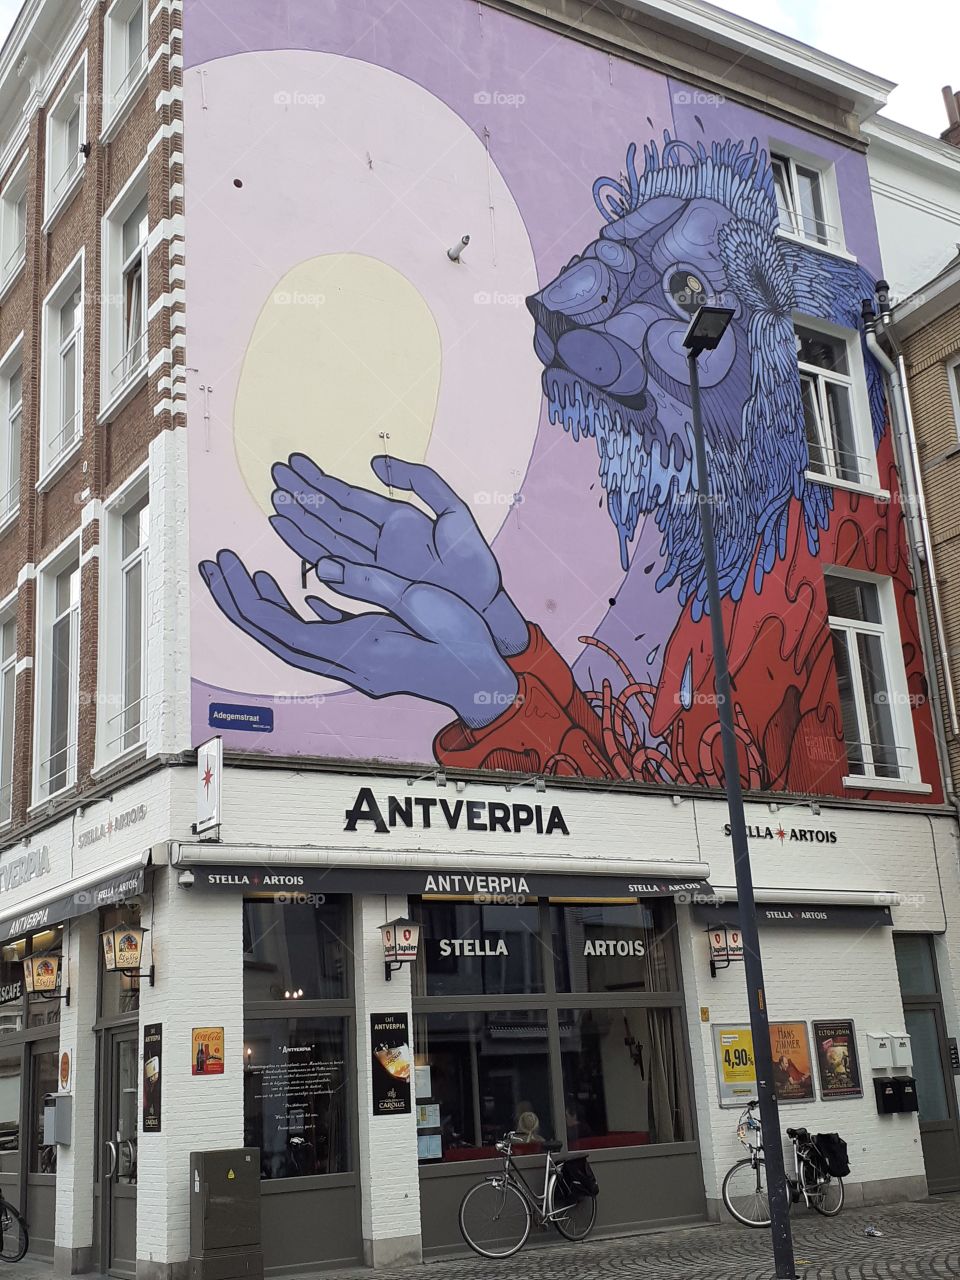 graffiti on house in Mechelen Belgium